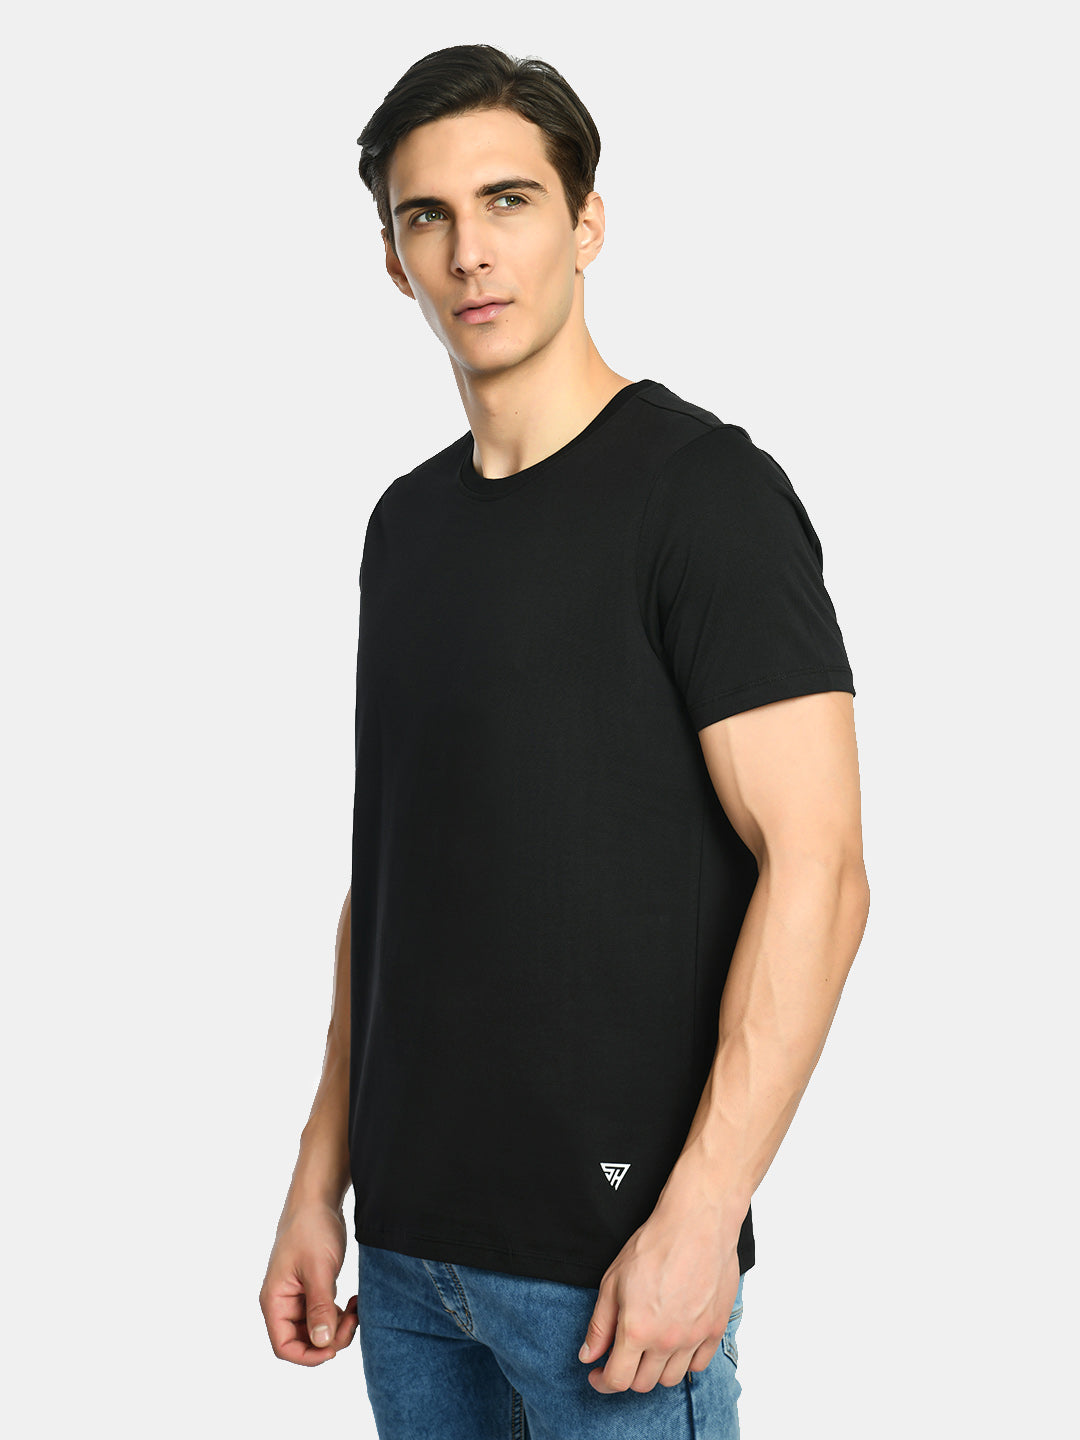 Men's Midnight Black Round Neck T-Shirt